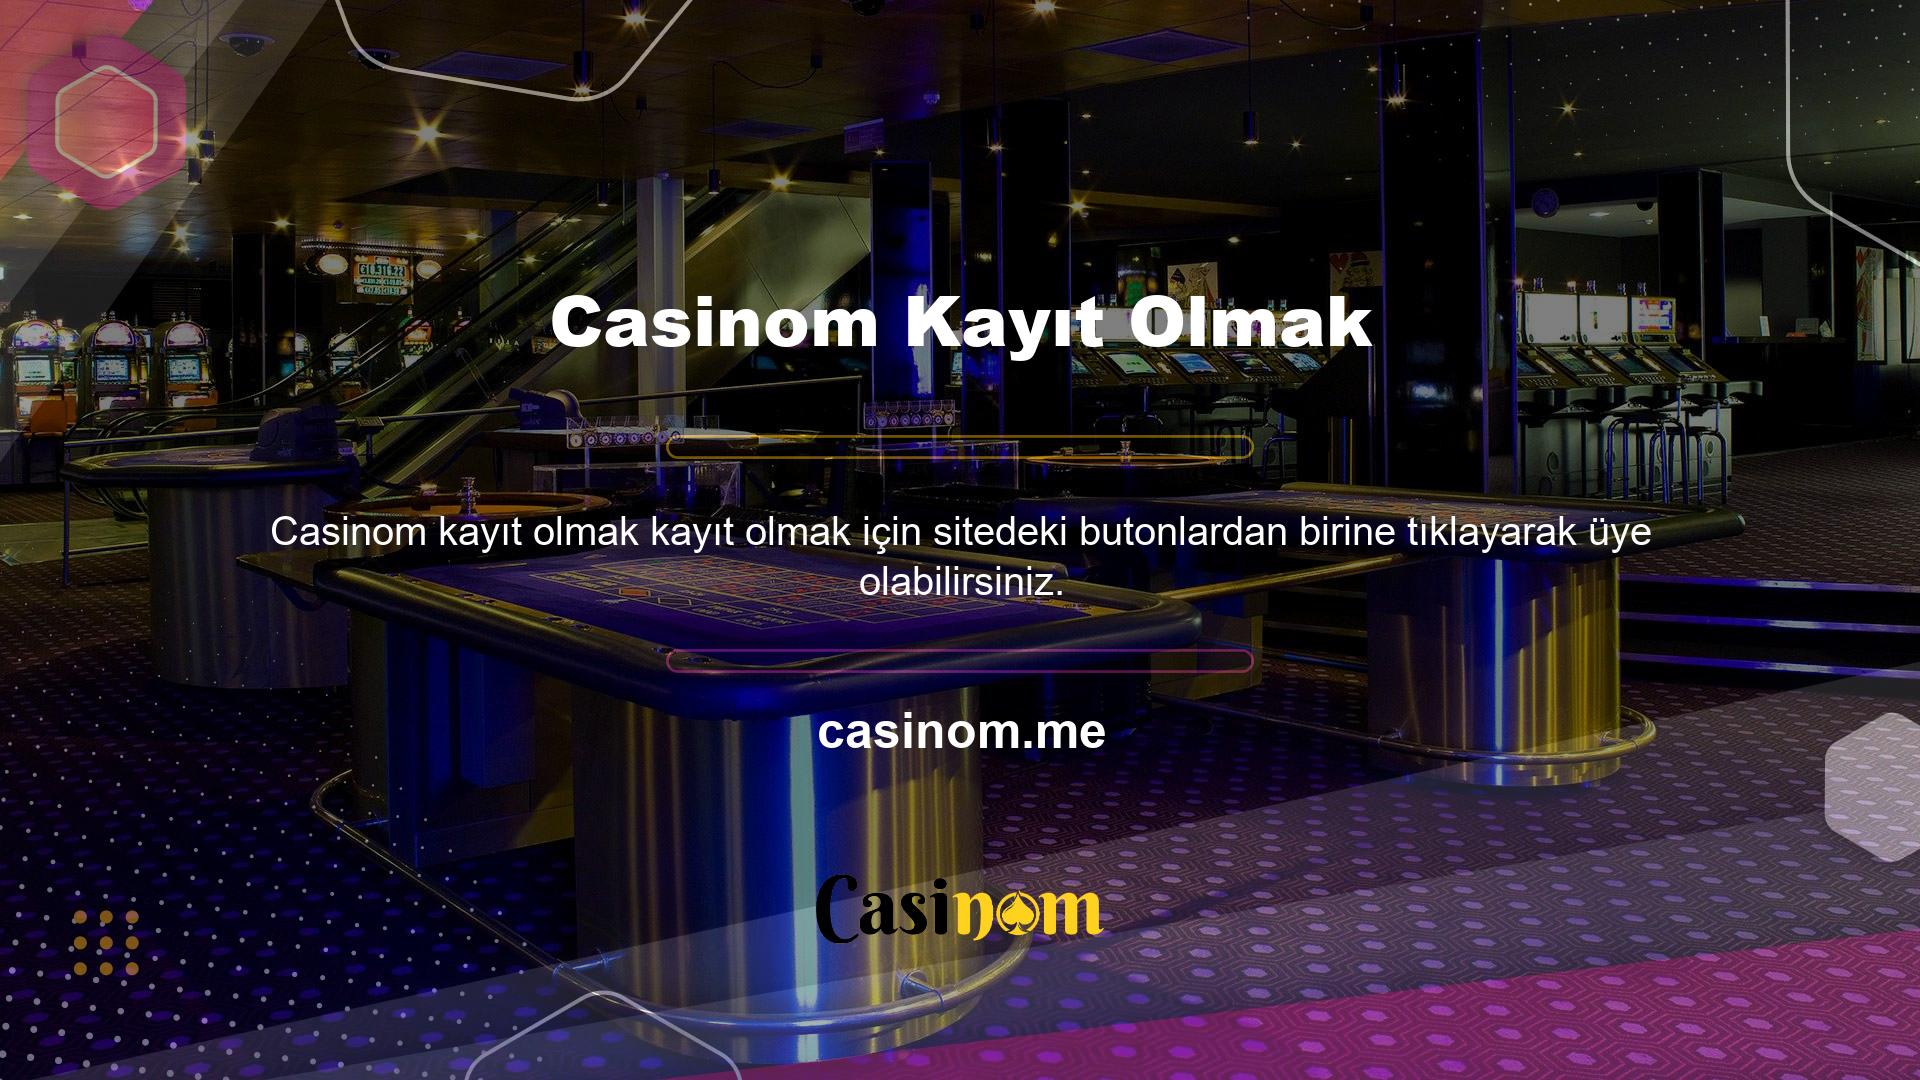 Casinom bahis sitesi Türkiye pazarındaki en güvenilir yurtdışı bahis sitelerinden biridir